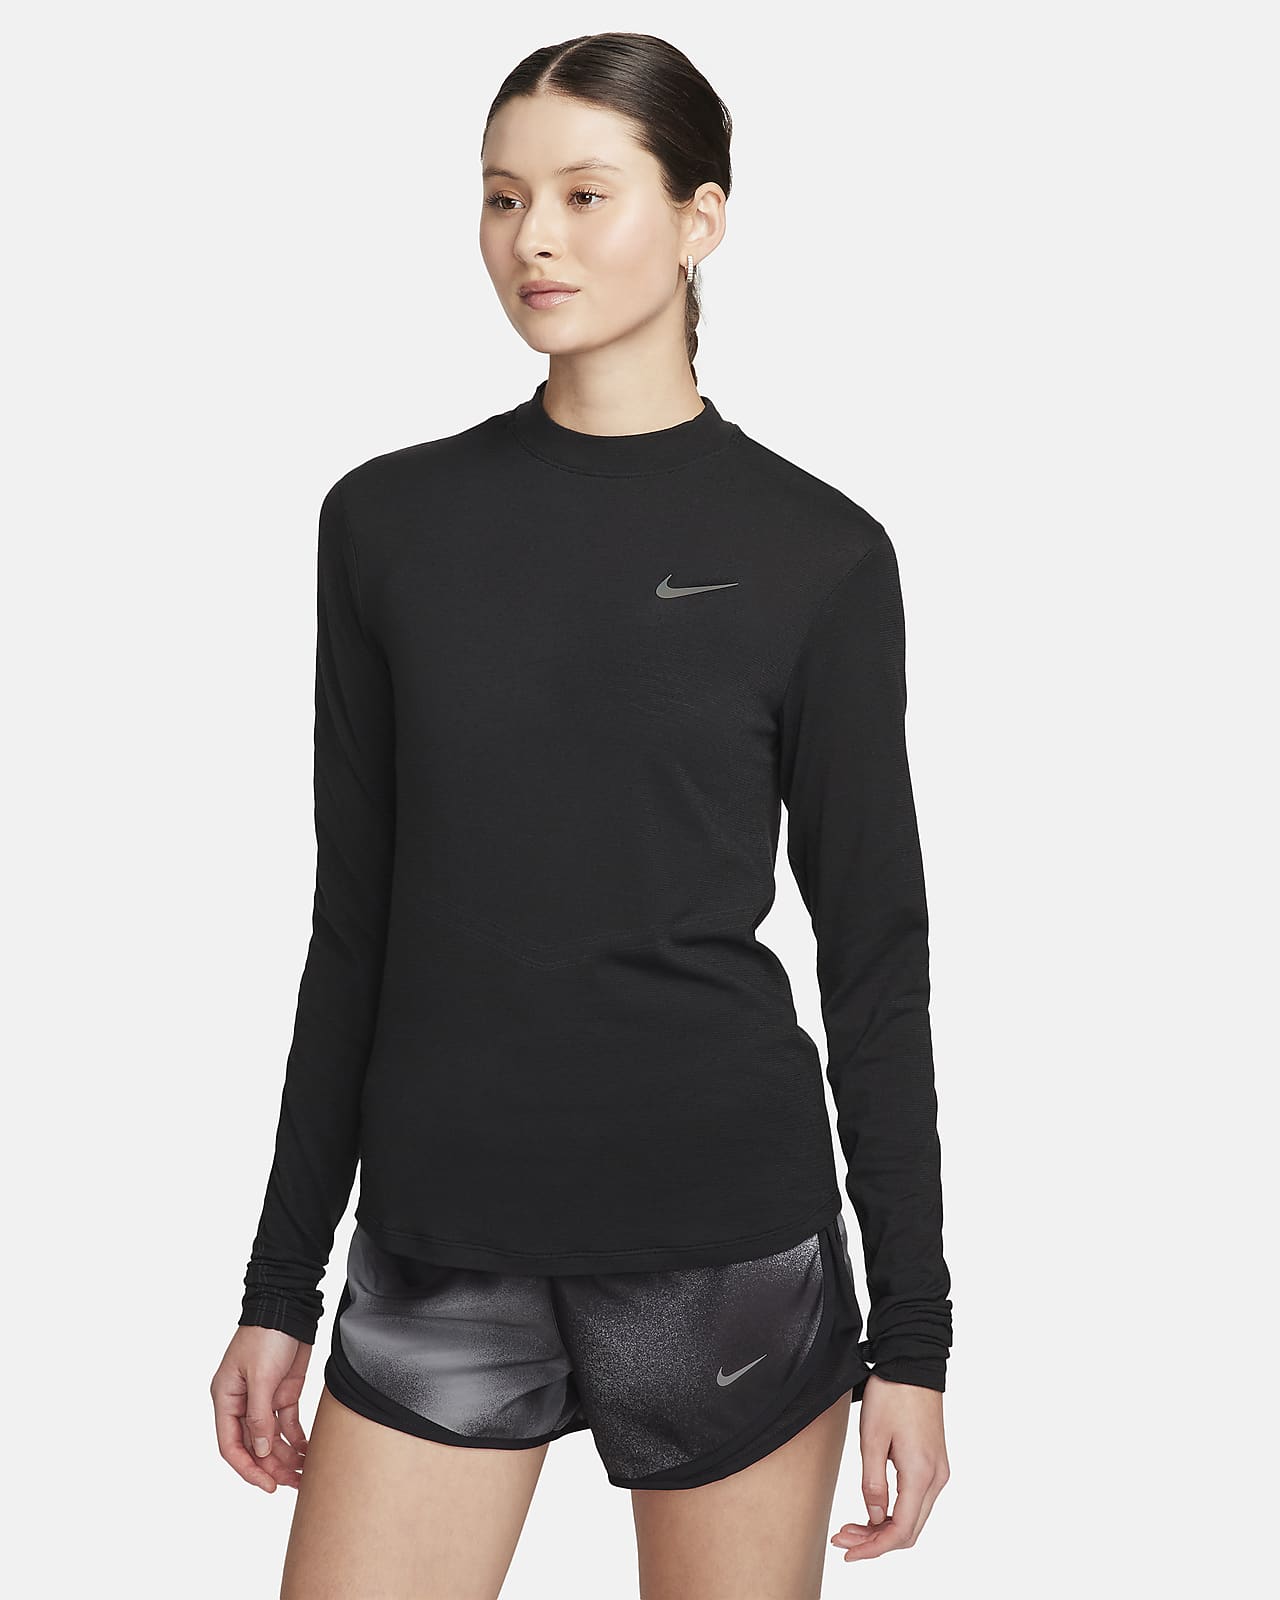 Nike Dri Fit Black Cropped Training Sweat Pants Women's Size XS 904462 -  beyond exchange